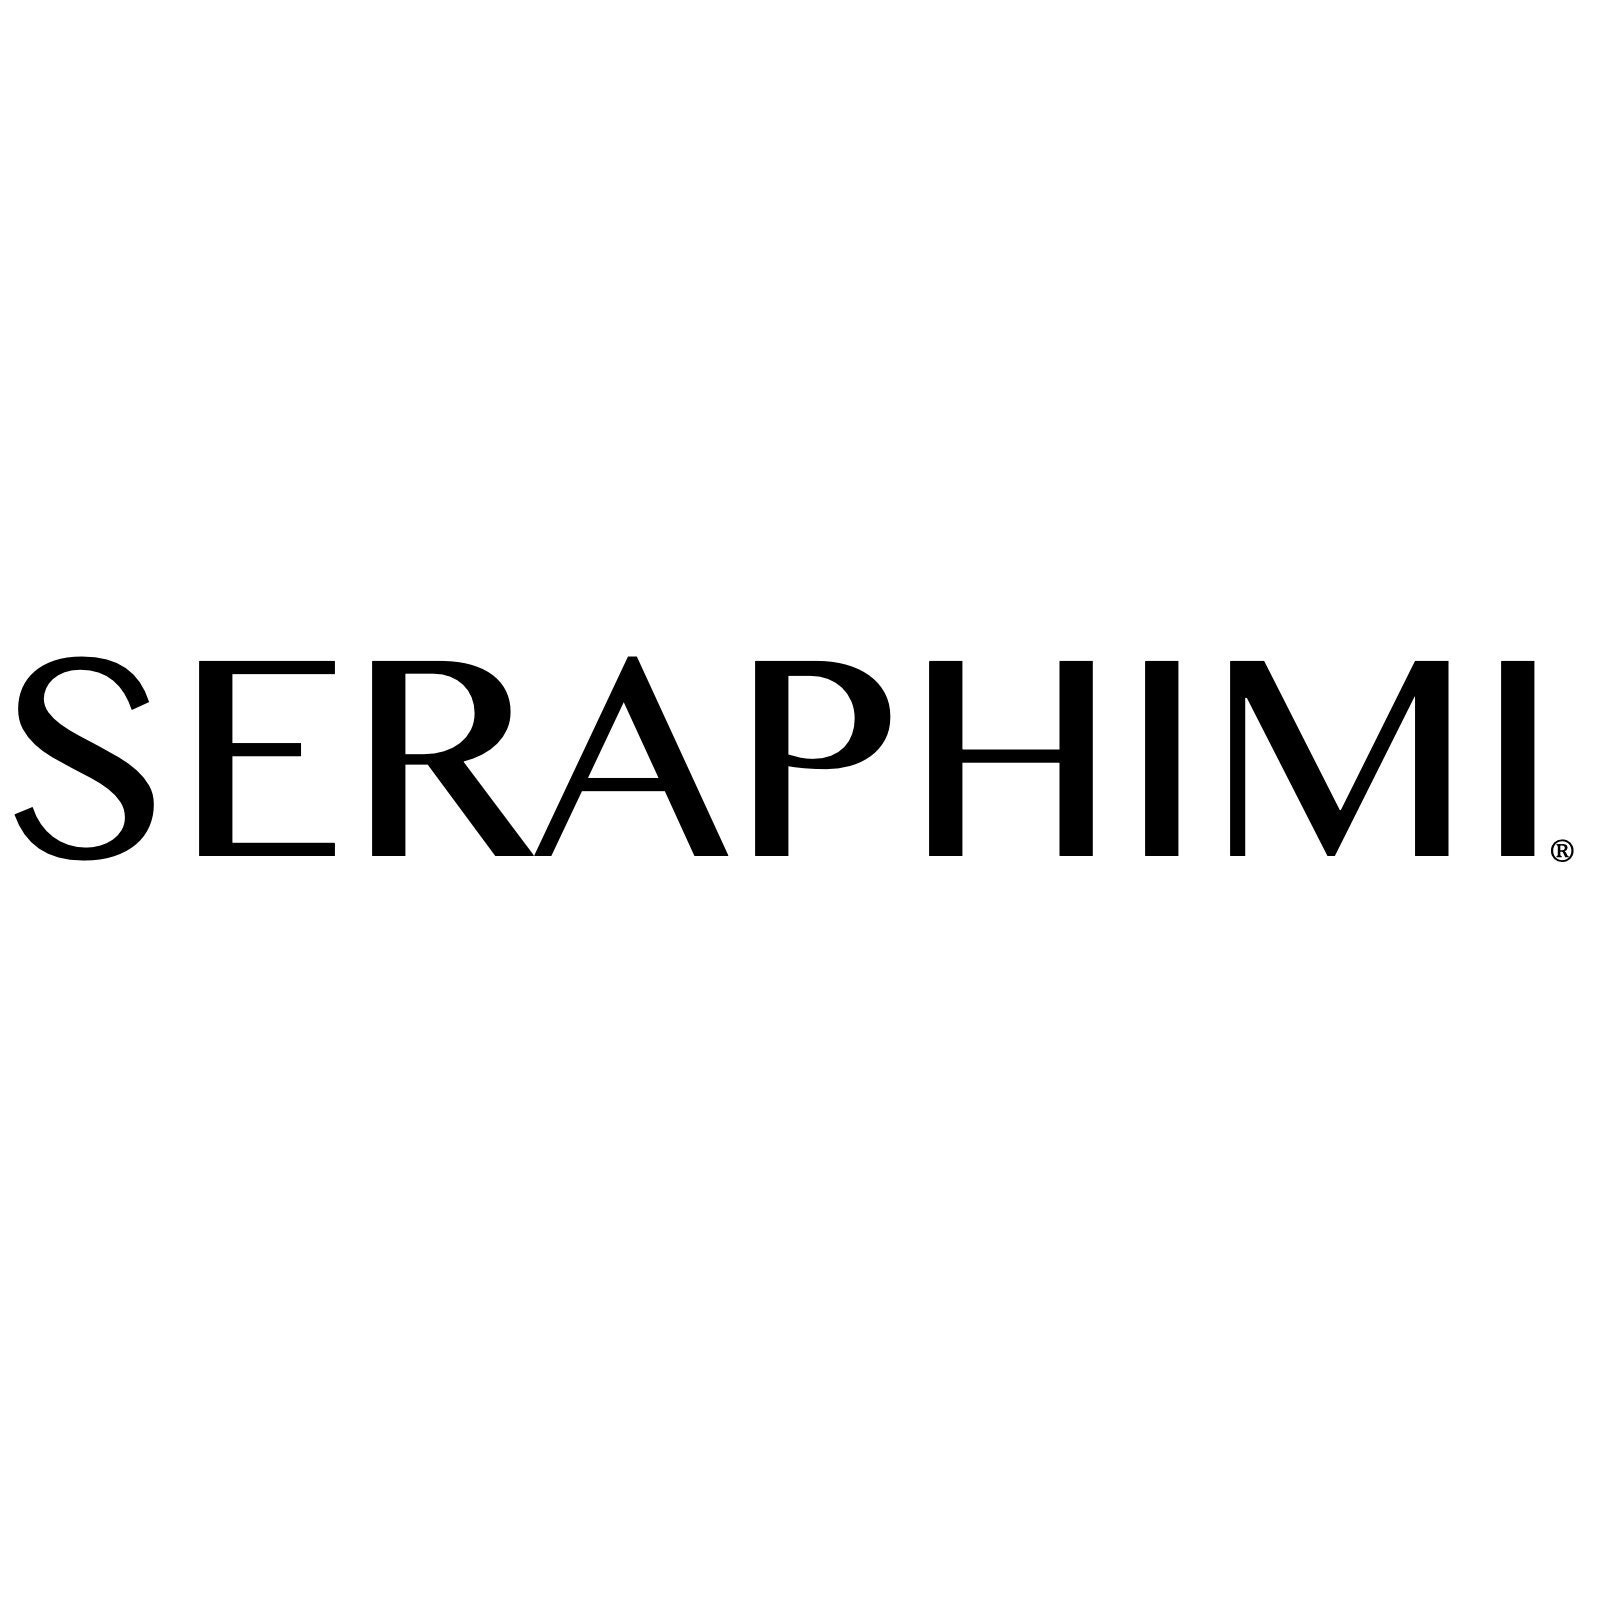 SERAPHIMI - Etsy